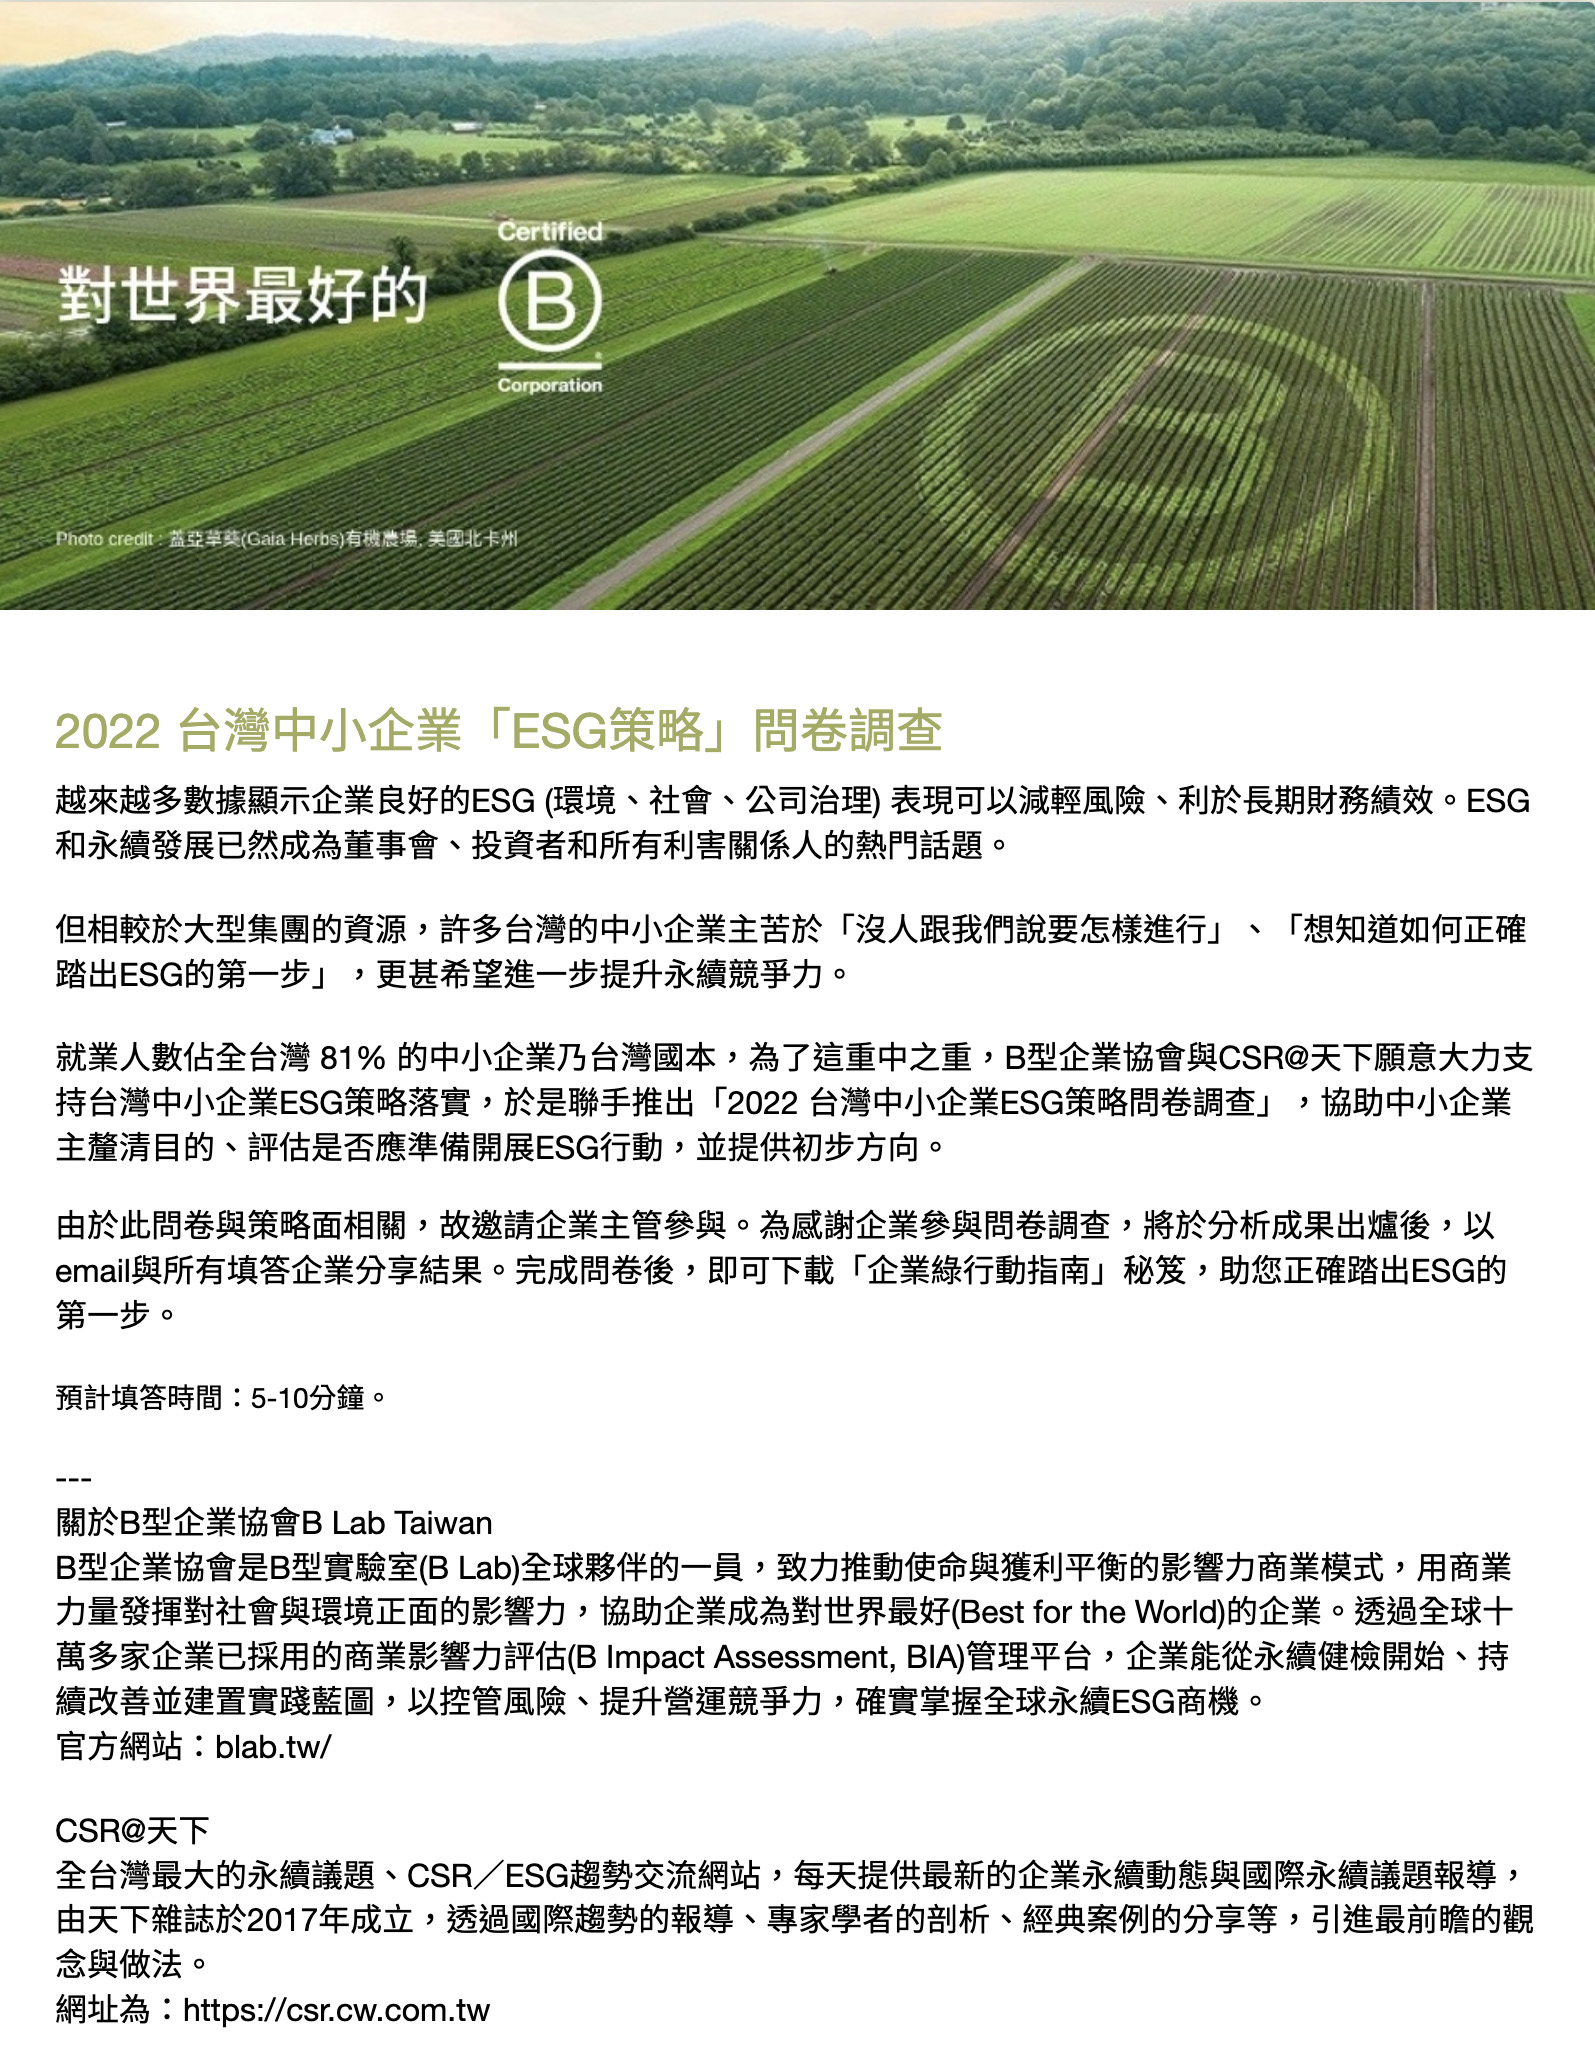 2022 台灣中小企業「ESG策略」問卷調查